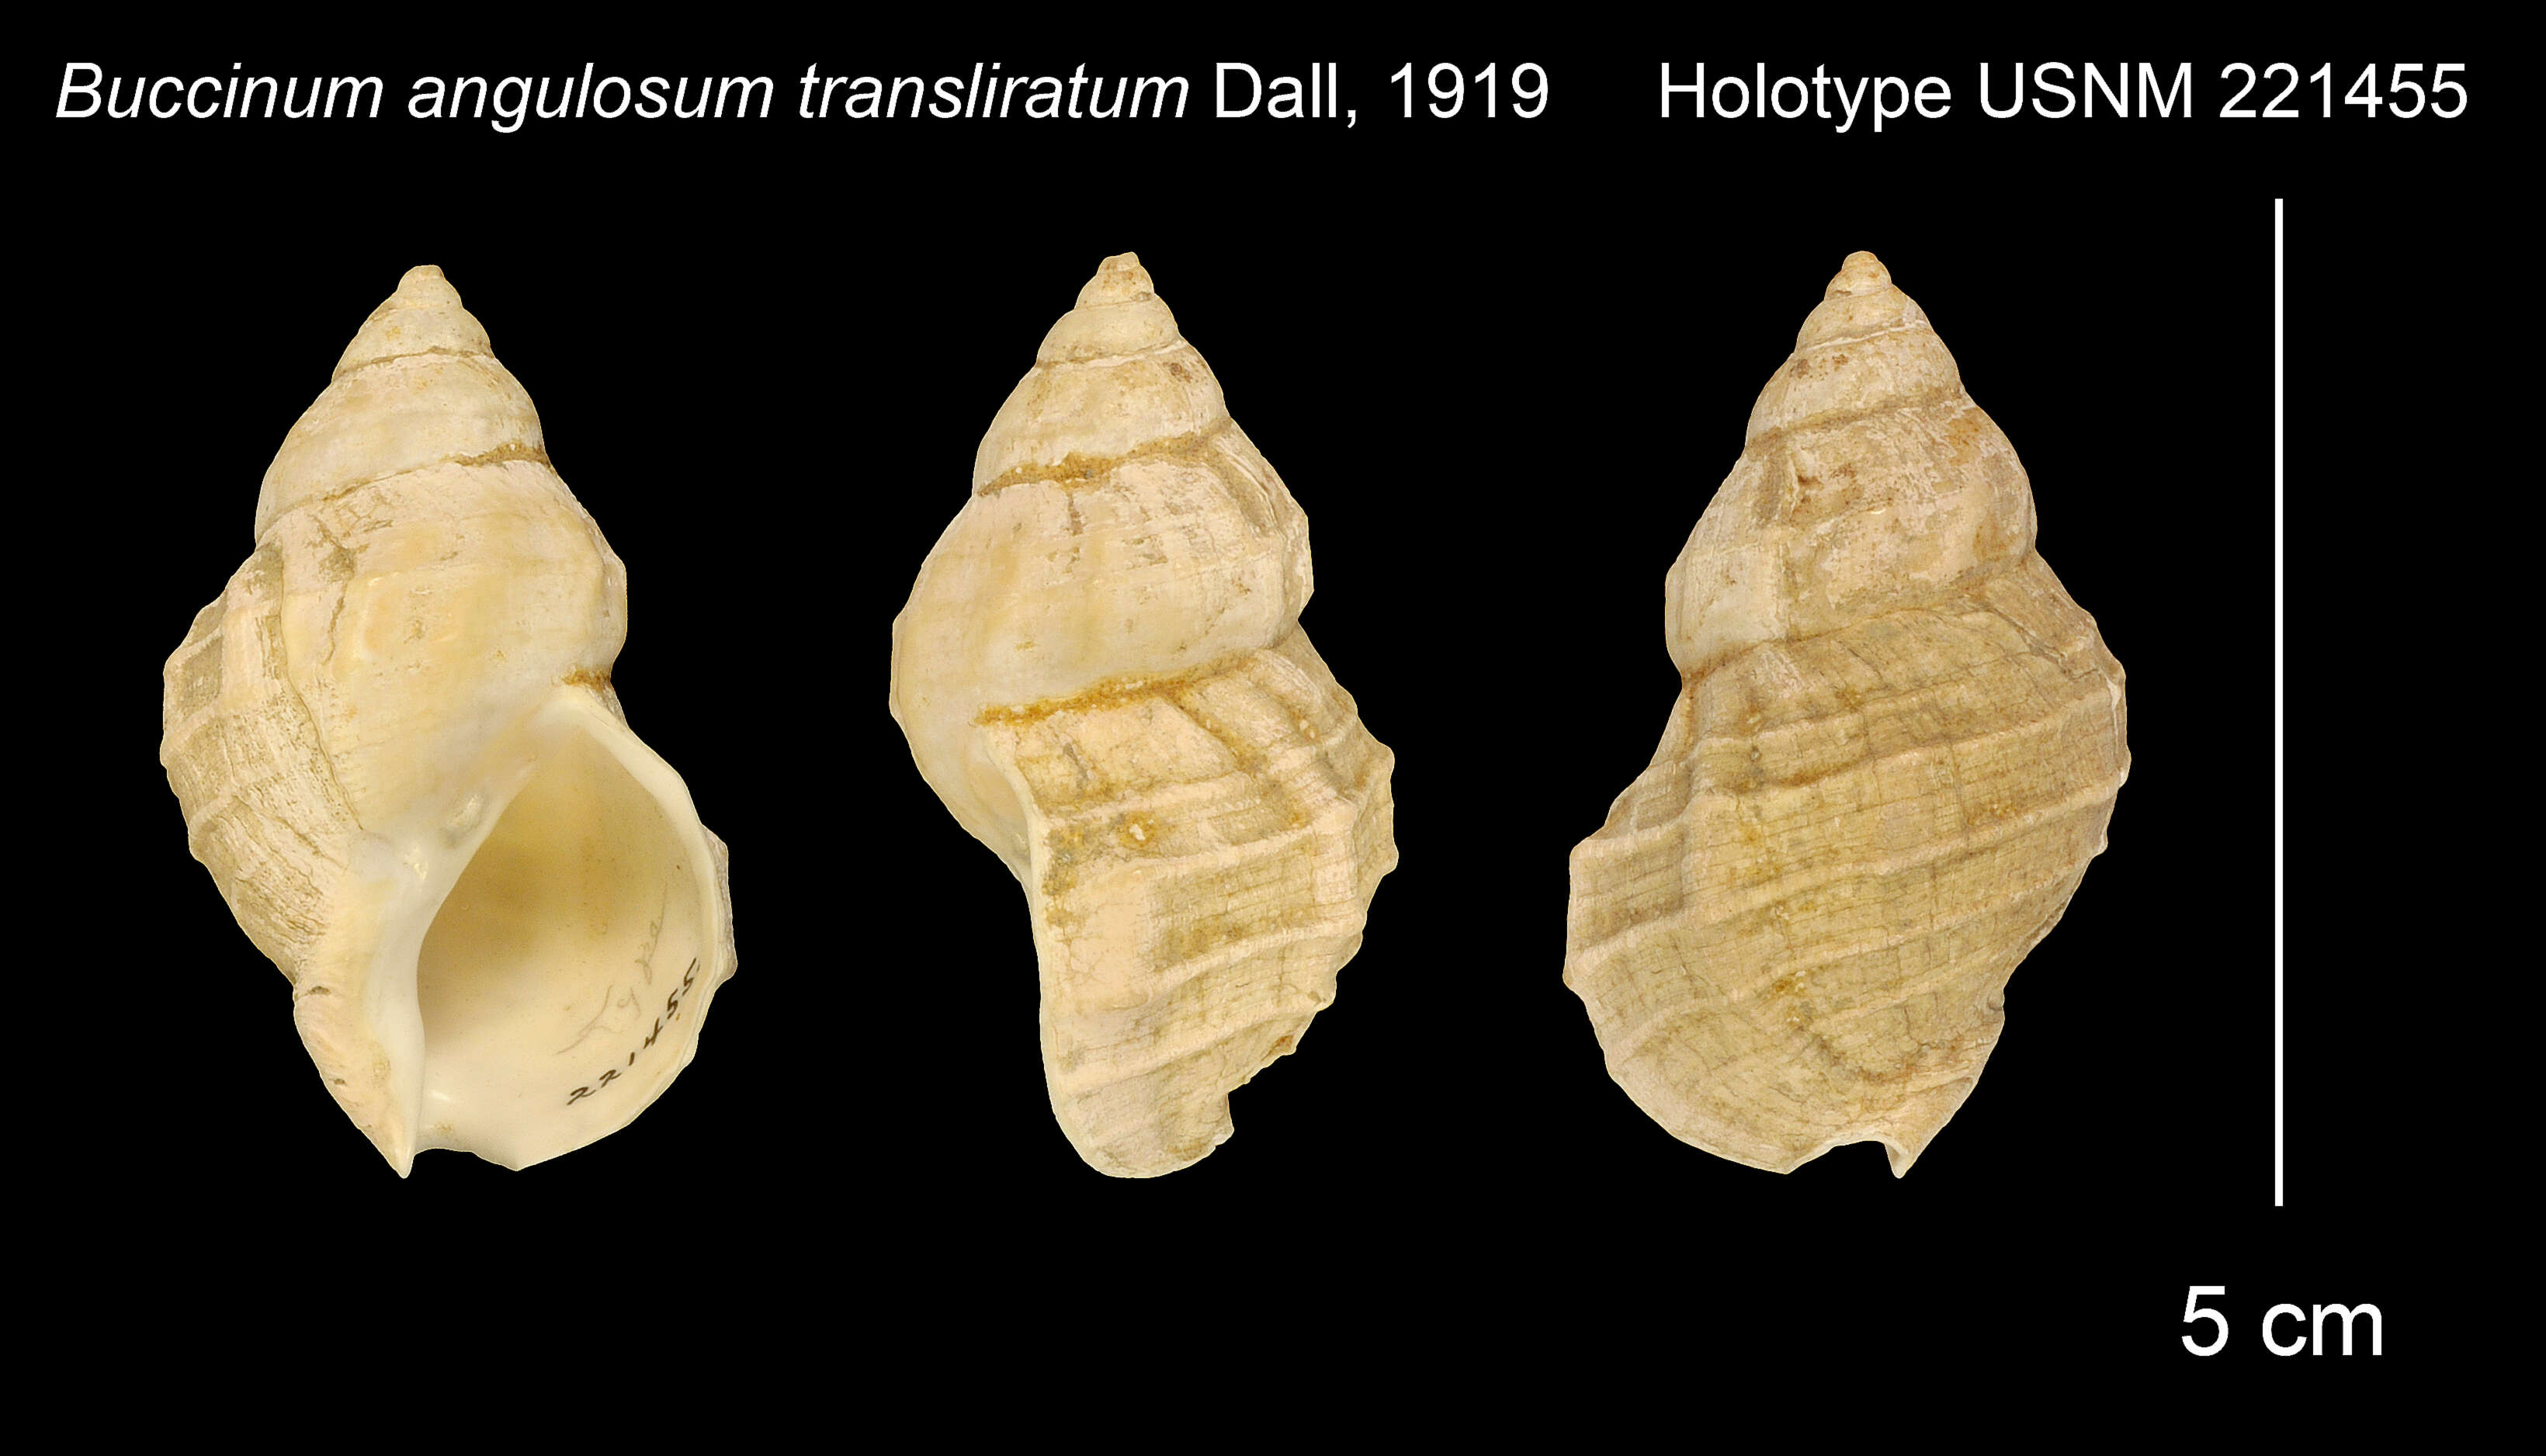 Image of Buccinum angulosum transliratum Dall 1919